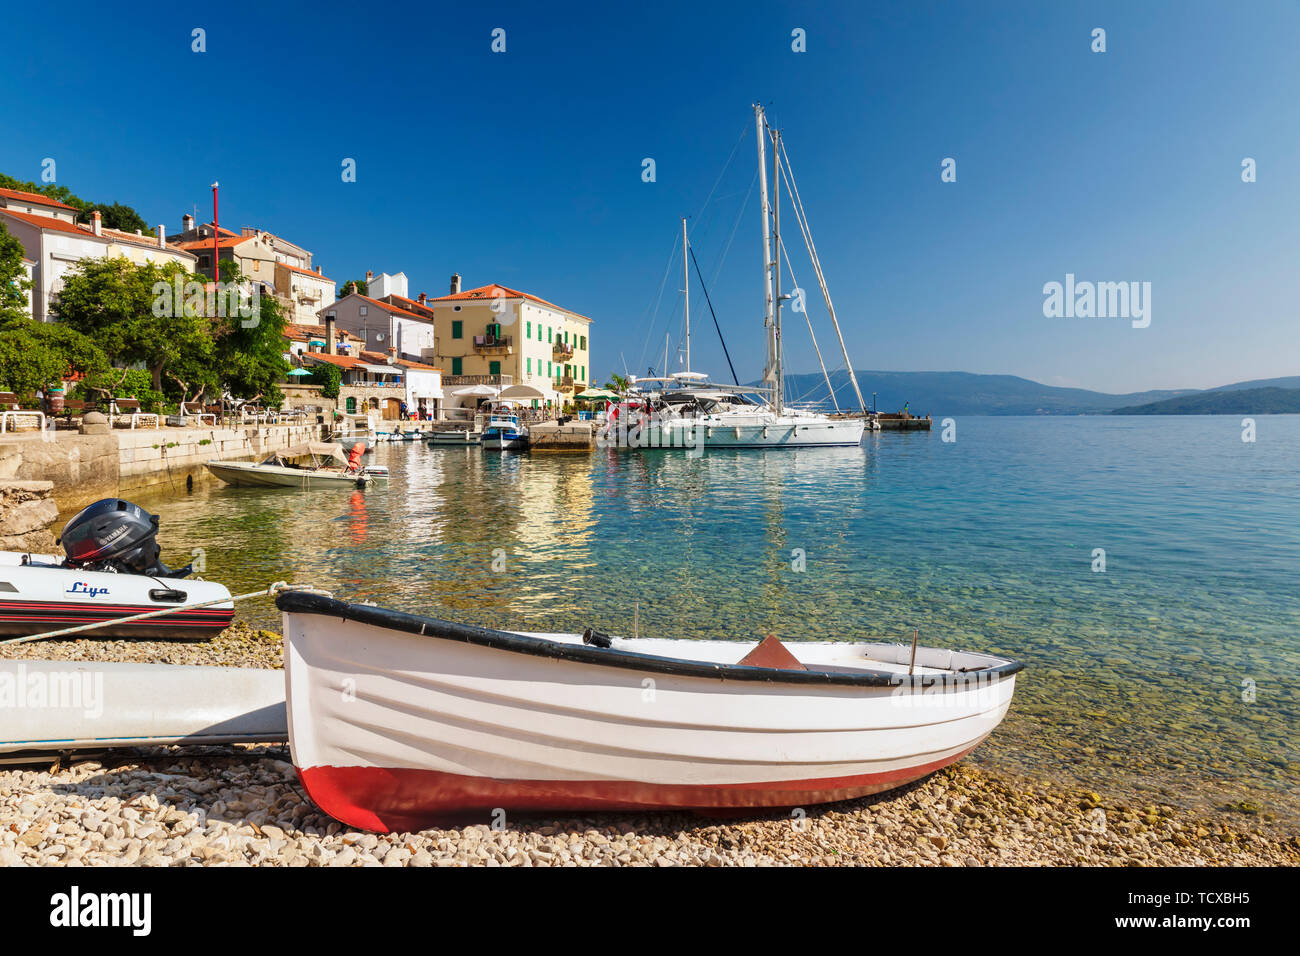 Bateaux de pêche au port, l'île de Cres Valun, golfe de Kvarner, Croatie, Europe, Banque D'Images